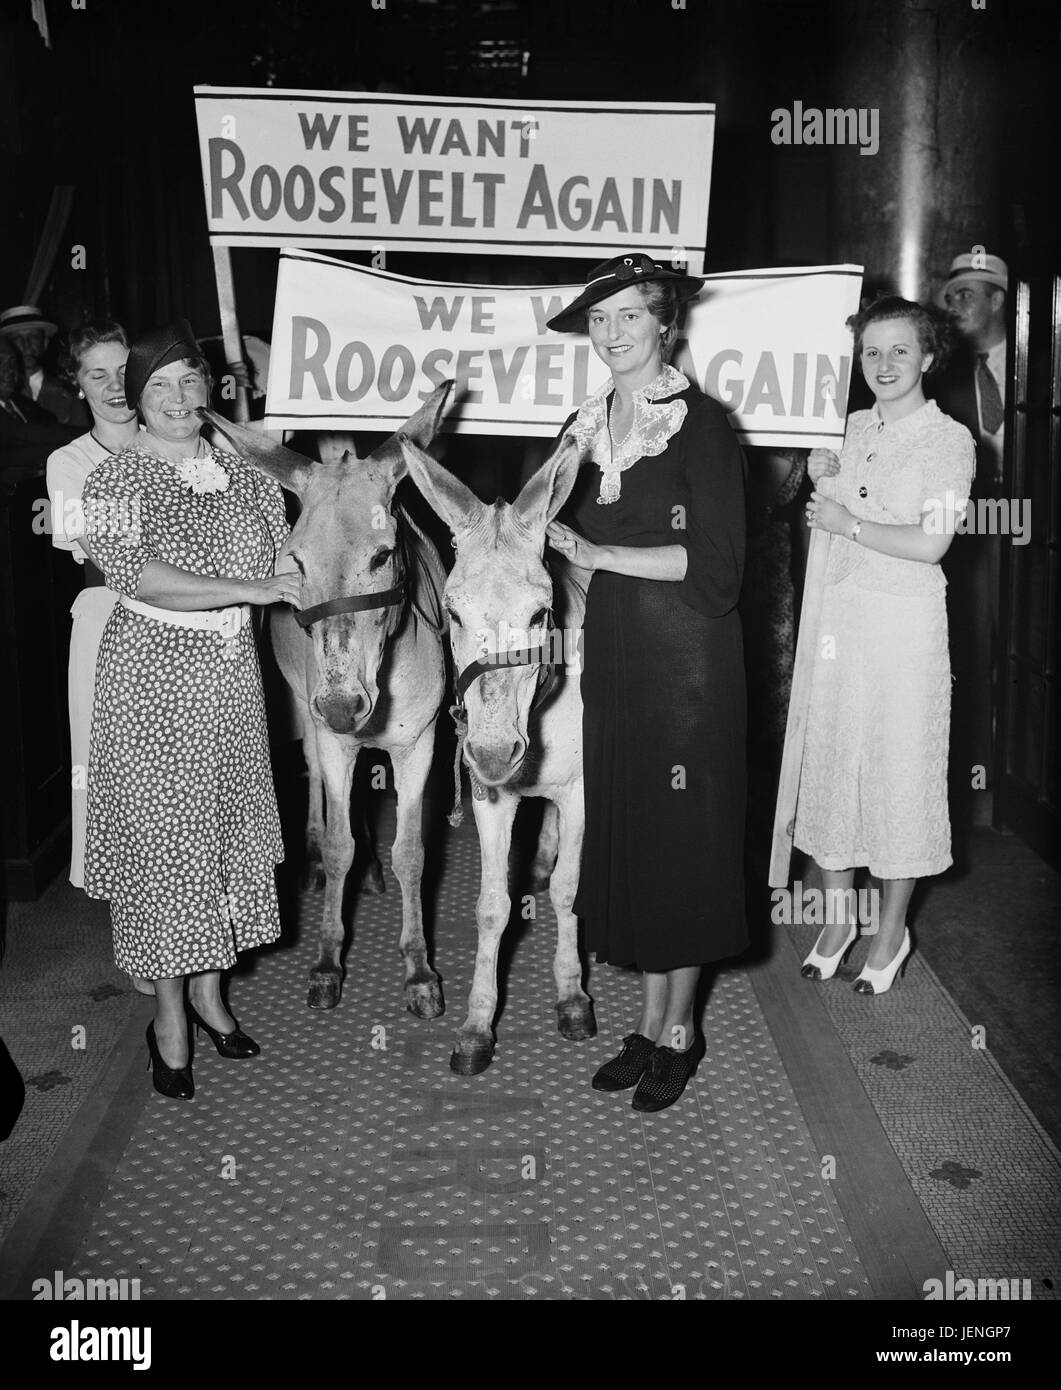 Il gruppo di donne azienda segni "Vogliamo Roosevelt nuovamente" mentre si cammina con gli asini, Harris & Ewing, 1936 Foto Stock